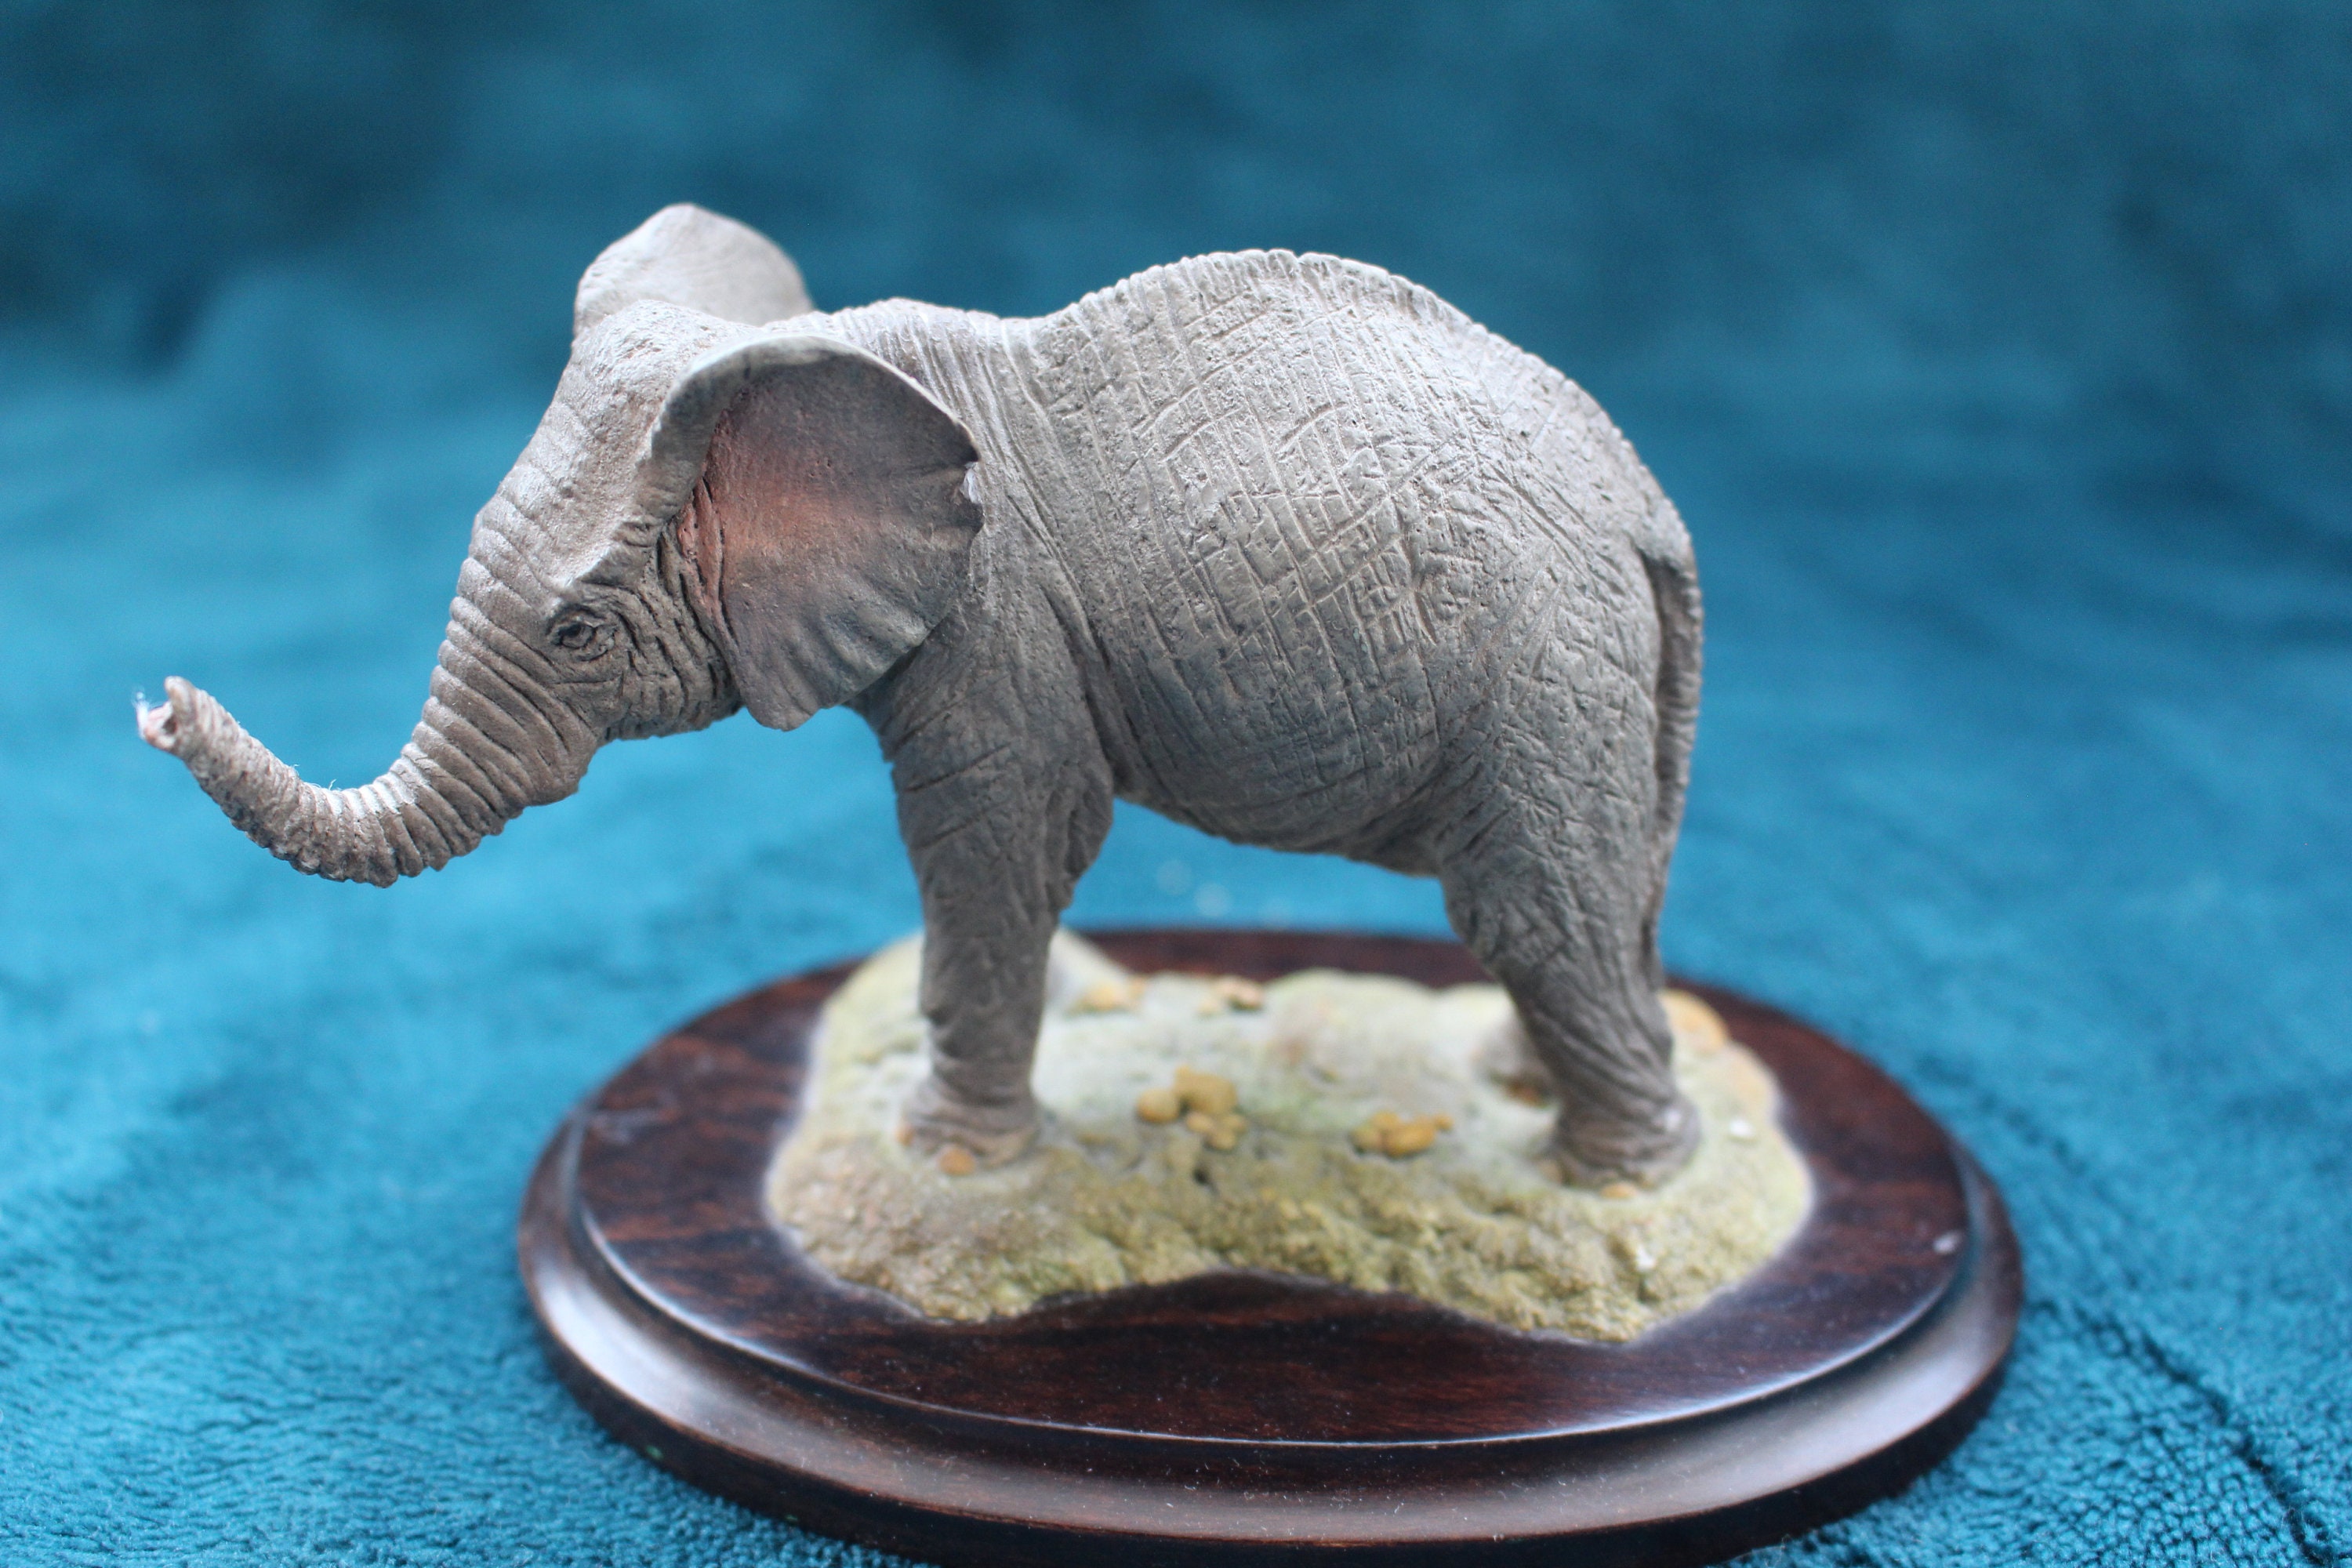 Elefantes figuras decorativas de resina - ArteShop